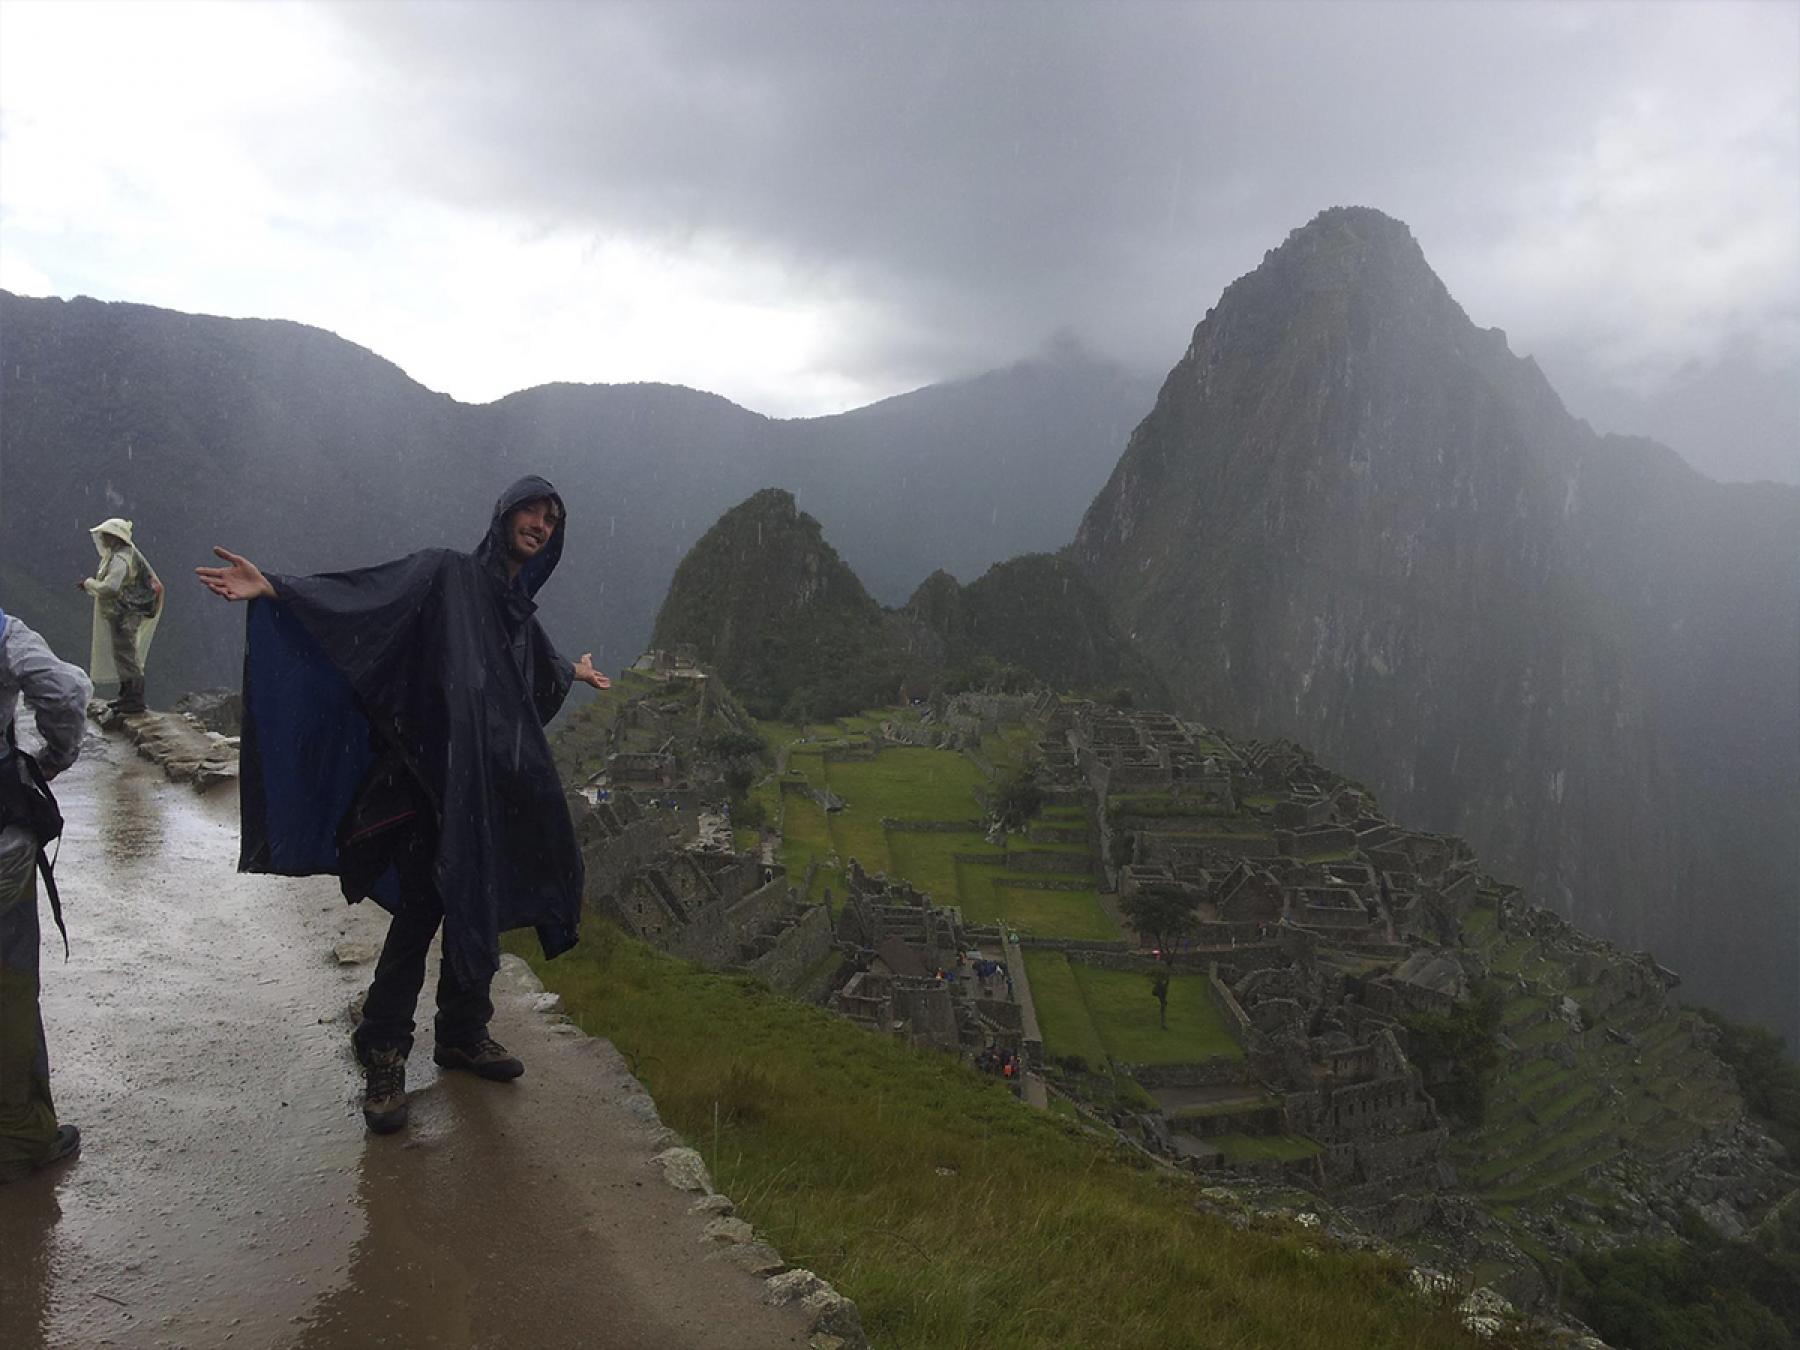 Recomendaciones para visitar Machu Picchu en época de lluvias